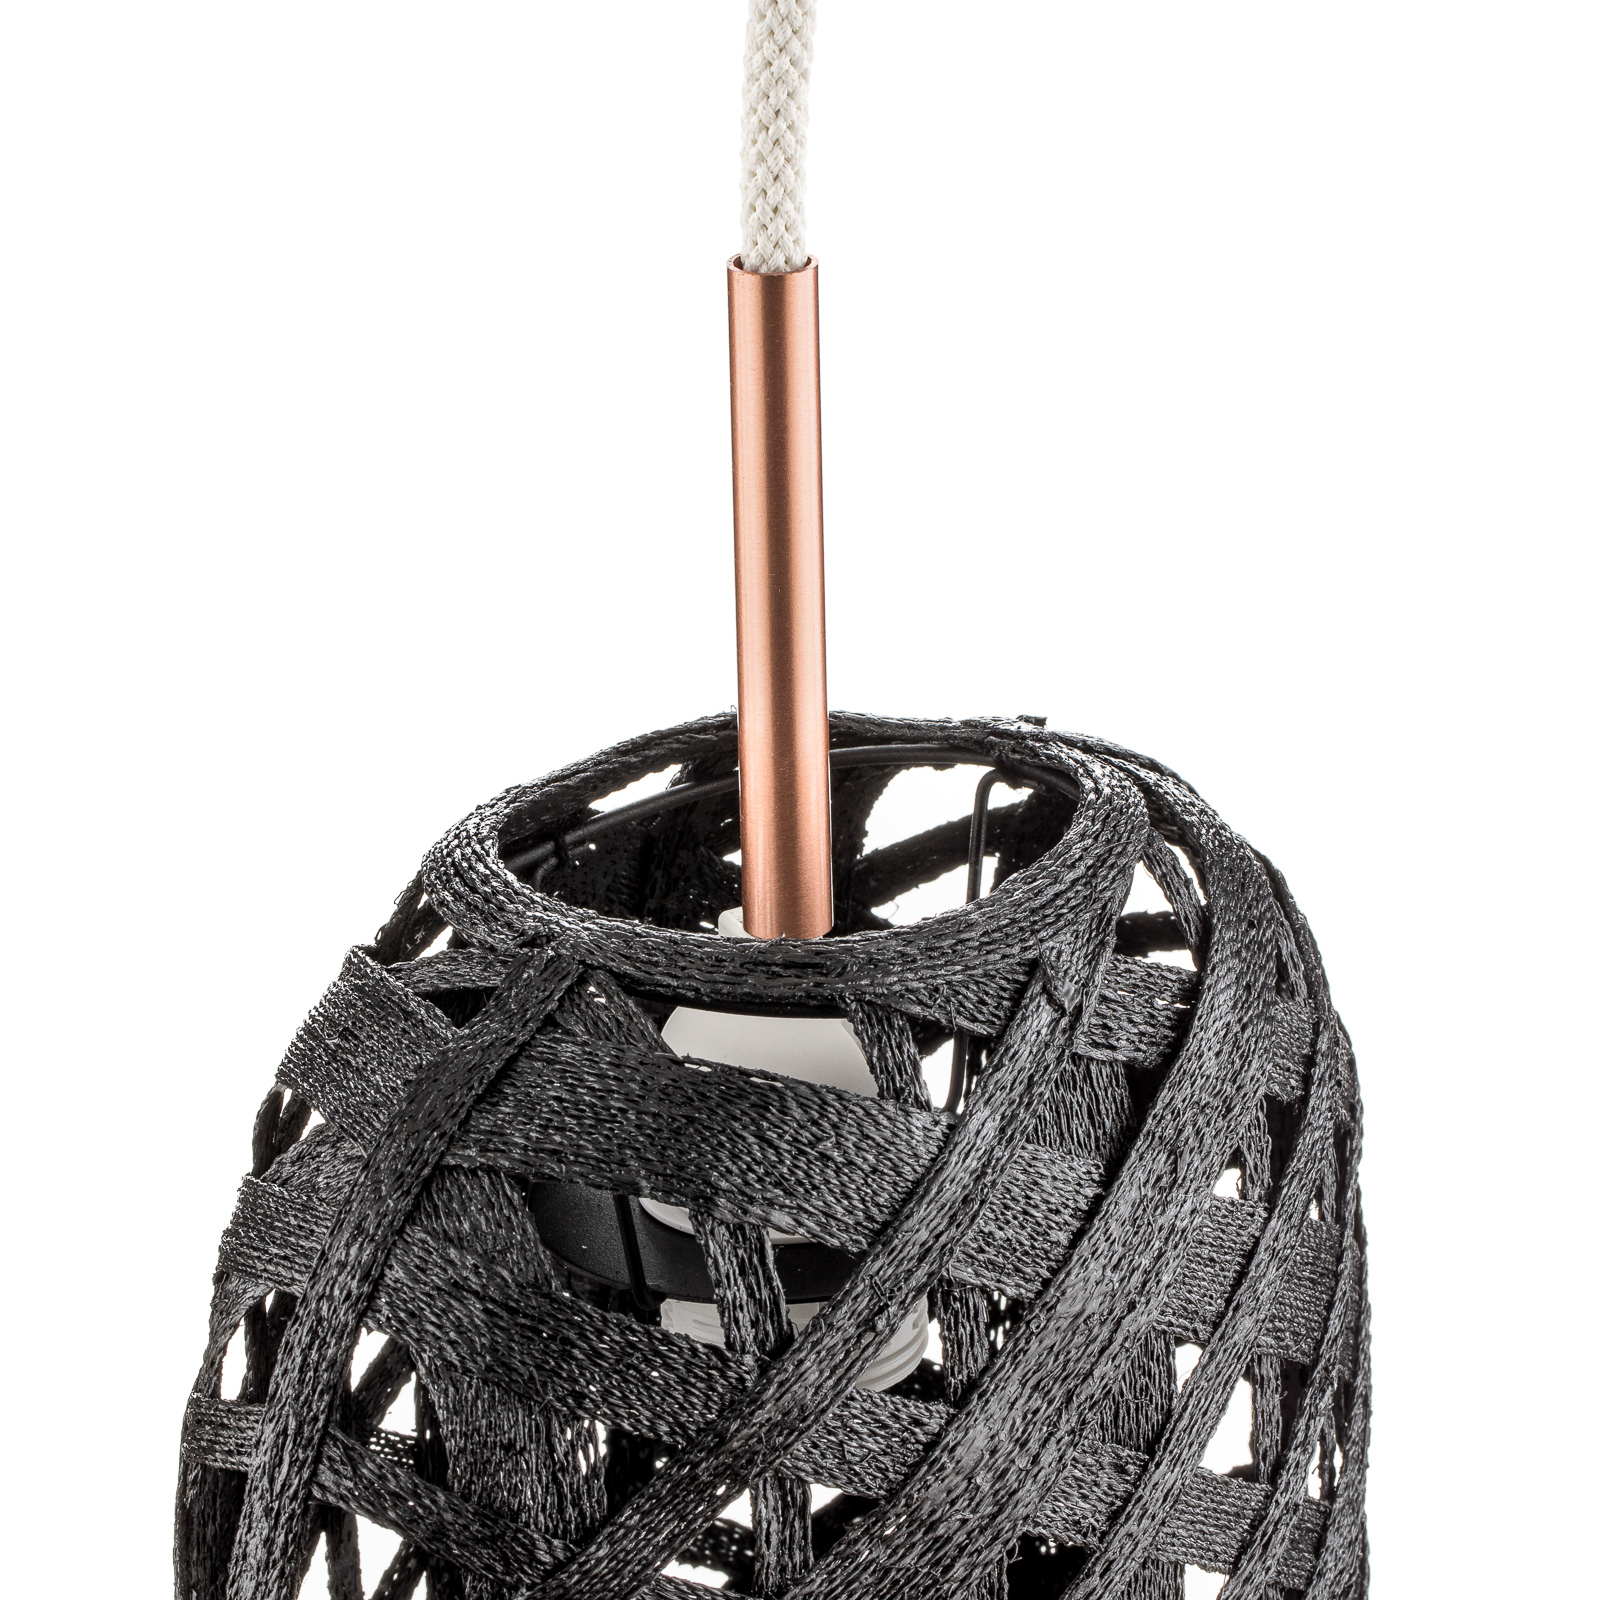 Forestier Capsule S lámpara colgante, 36 cm, negro